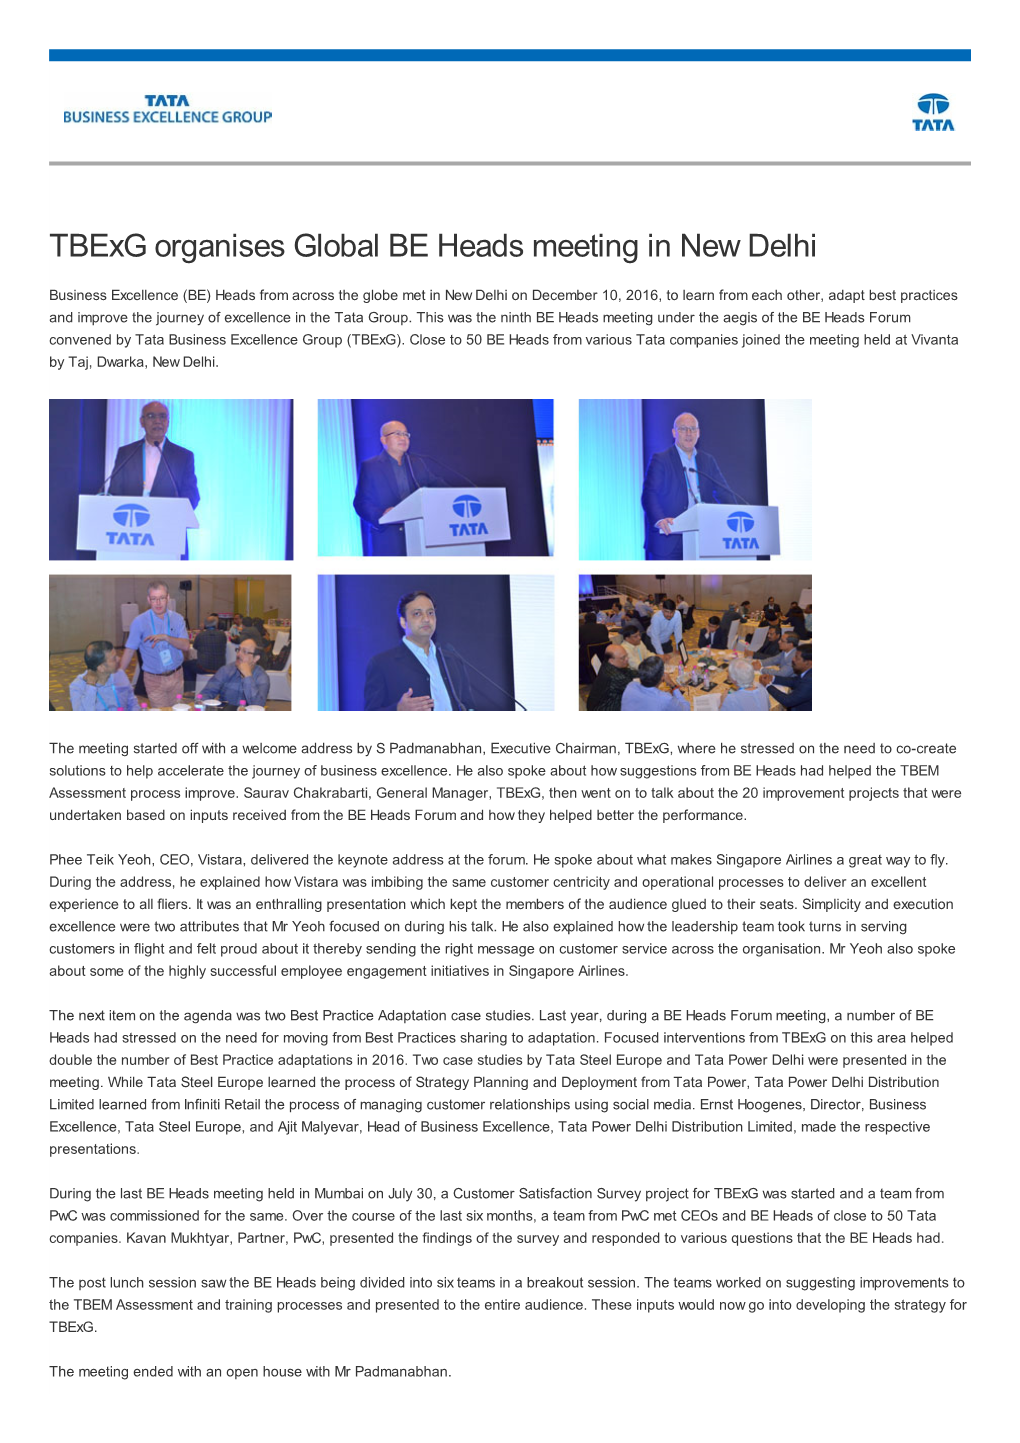 Tbexg Organises Global BE Heads Meeting in New Delhi